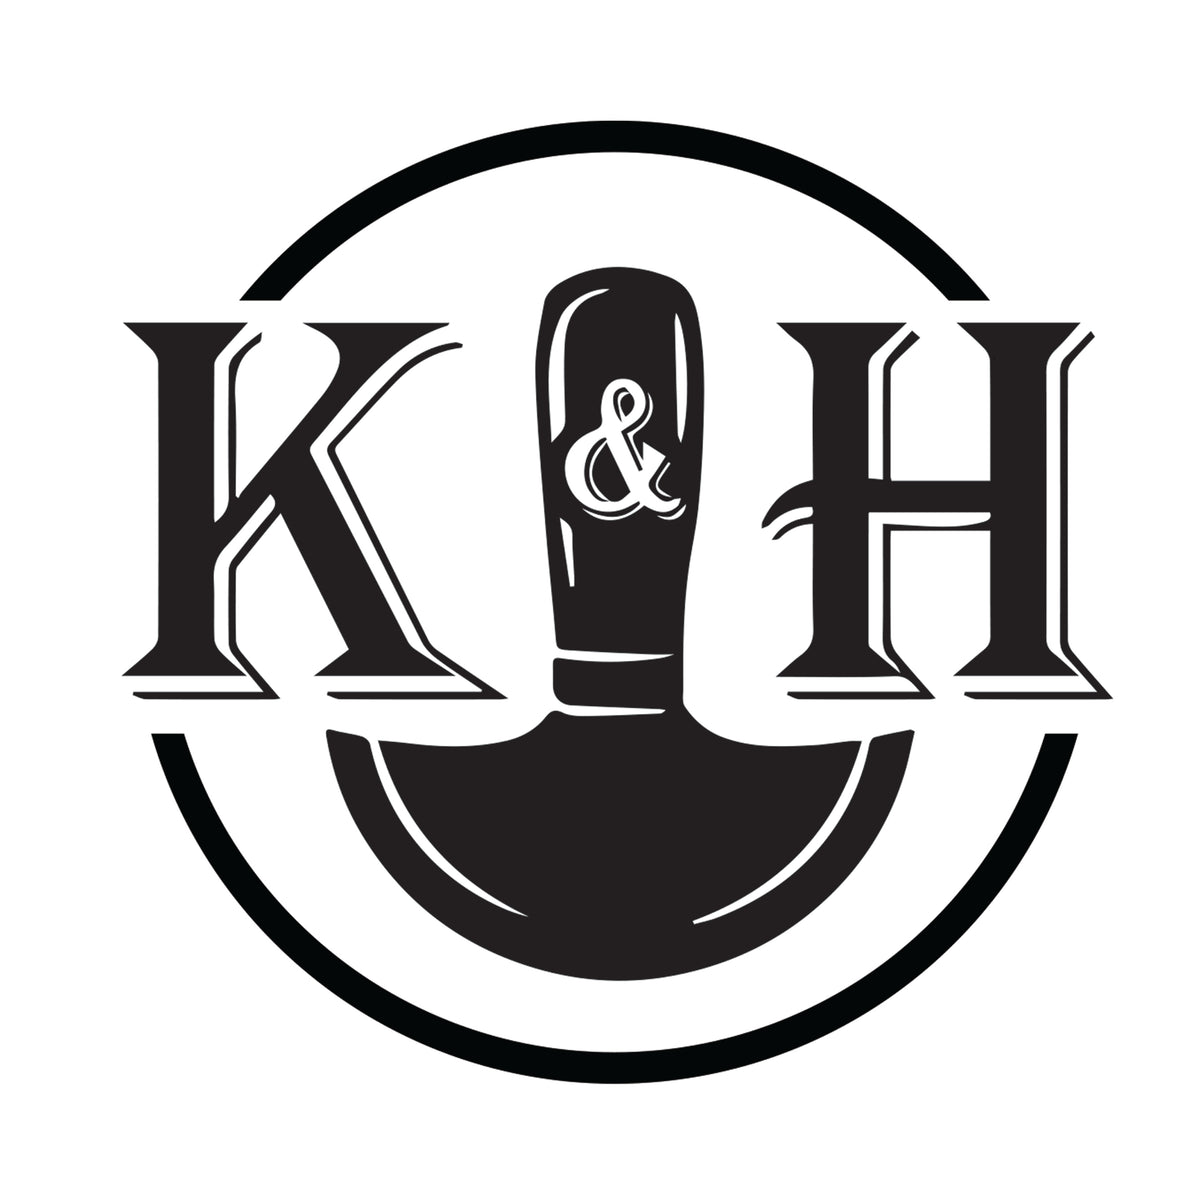 K&H Leatherworks - Handmade & Handstitched Leather Goods